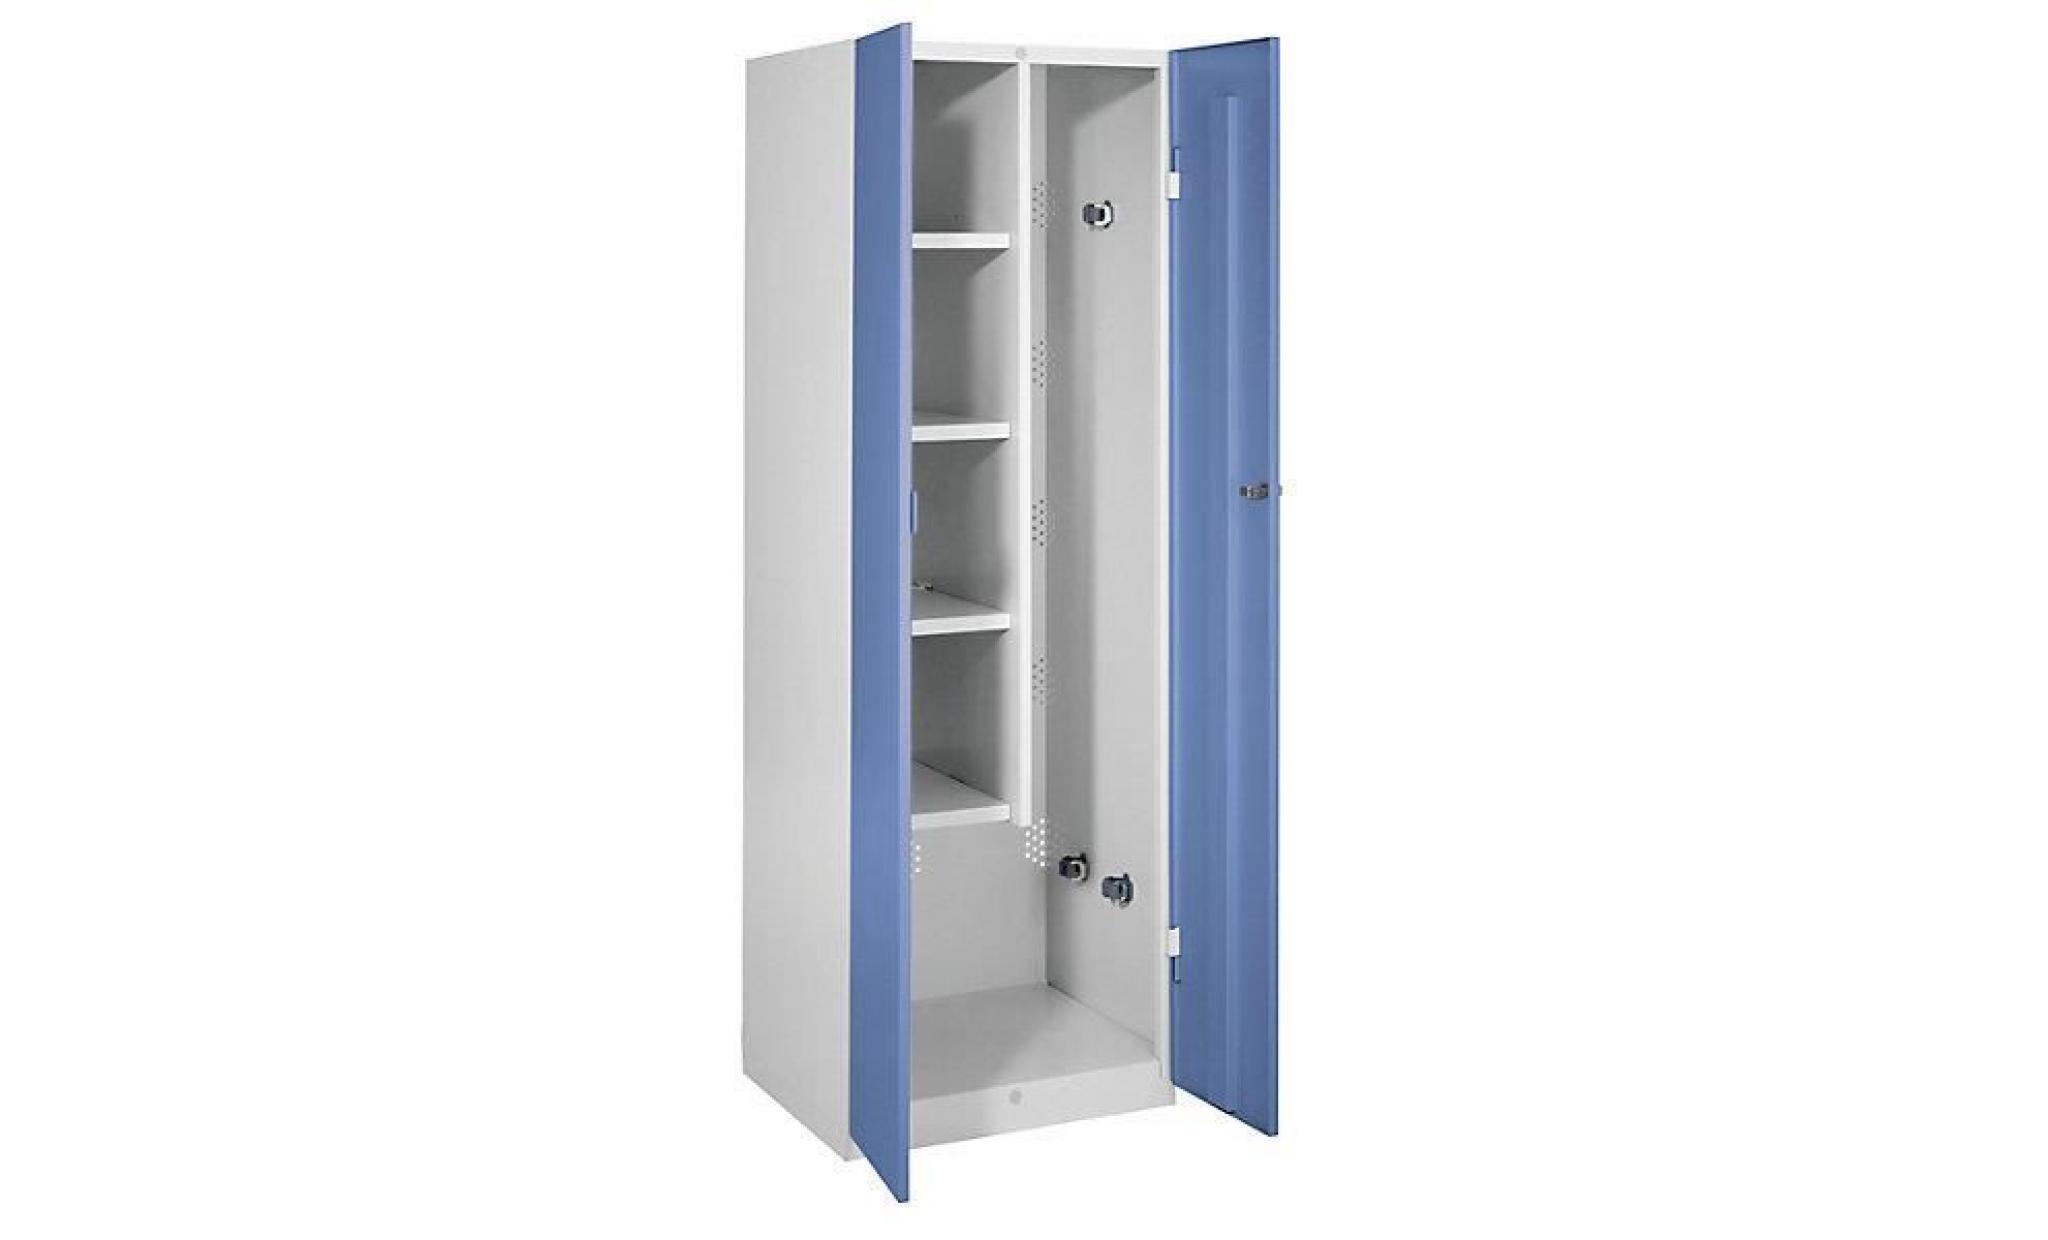 wolf vestiaire métallique   largeur 600 mm, 4 tablettes, 1 compartiment pour ustensiles portes bleu pigeon   armoire armoire de